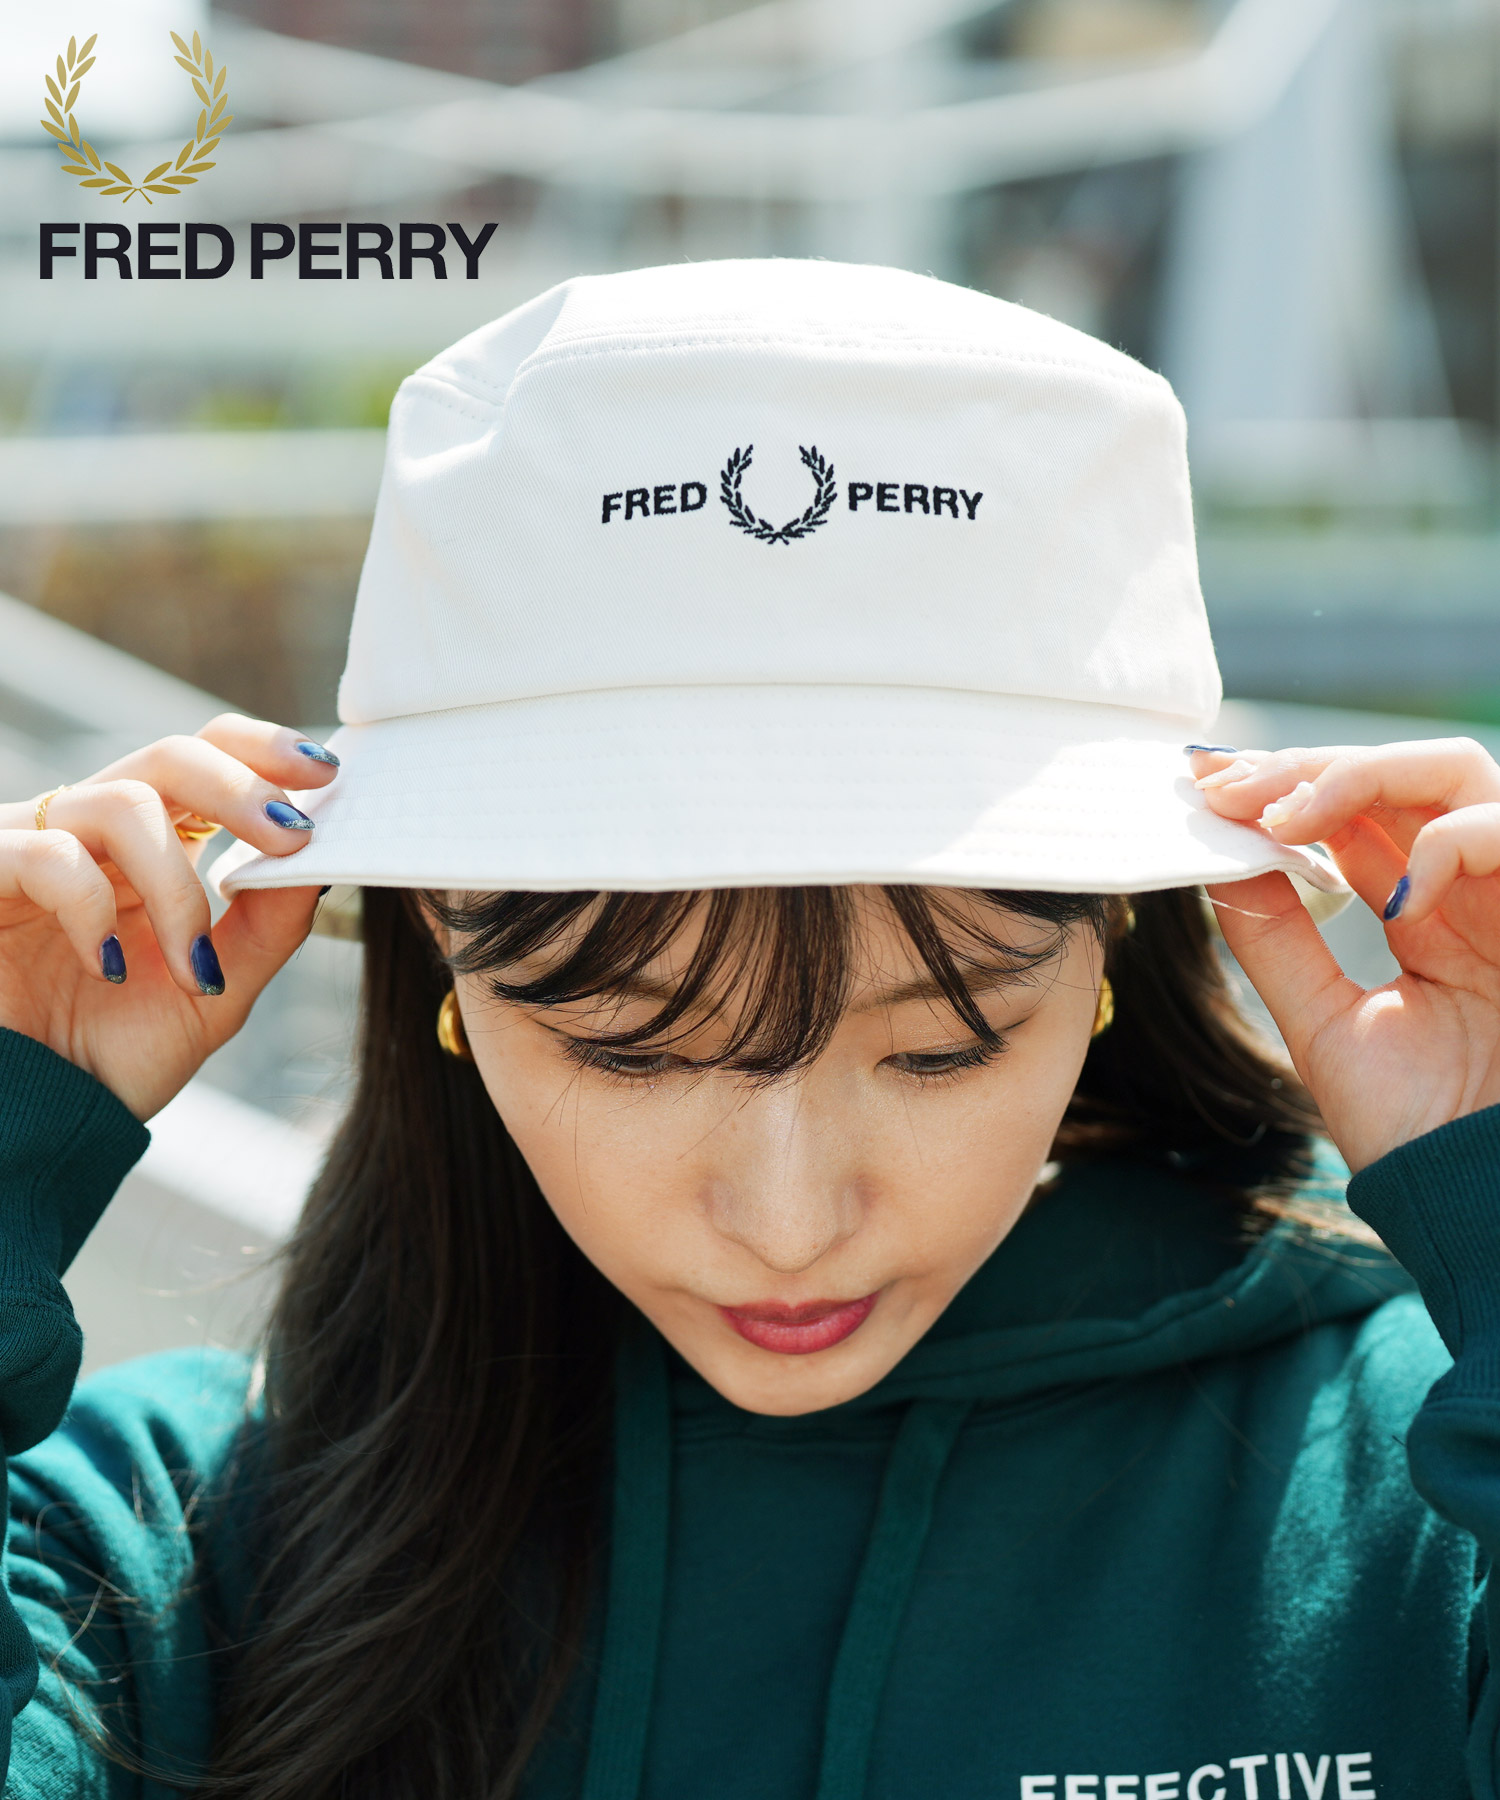 フレッドペリー FRED PERRY バケットハット ユニセックス 帽子 コットン メンズ レディース おしゃれ かわいい ブランド ロゴ プレゼント  ギフト